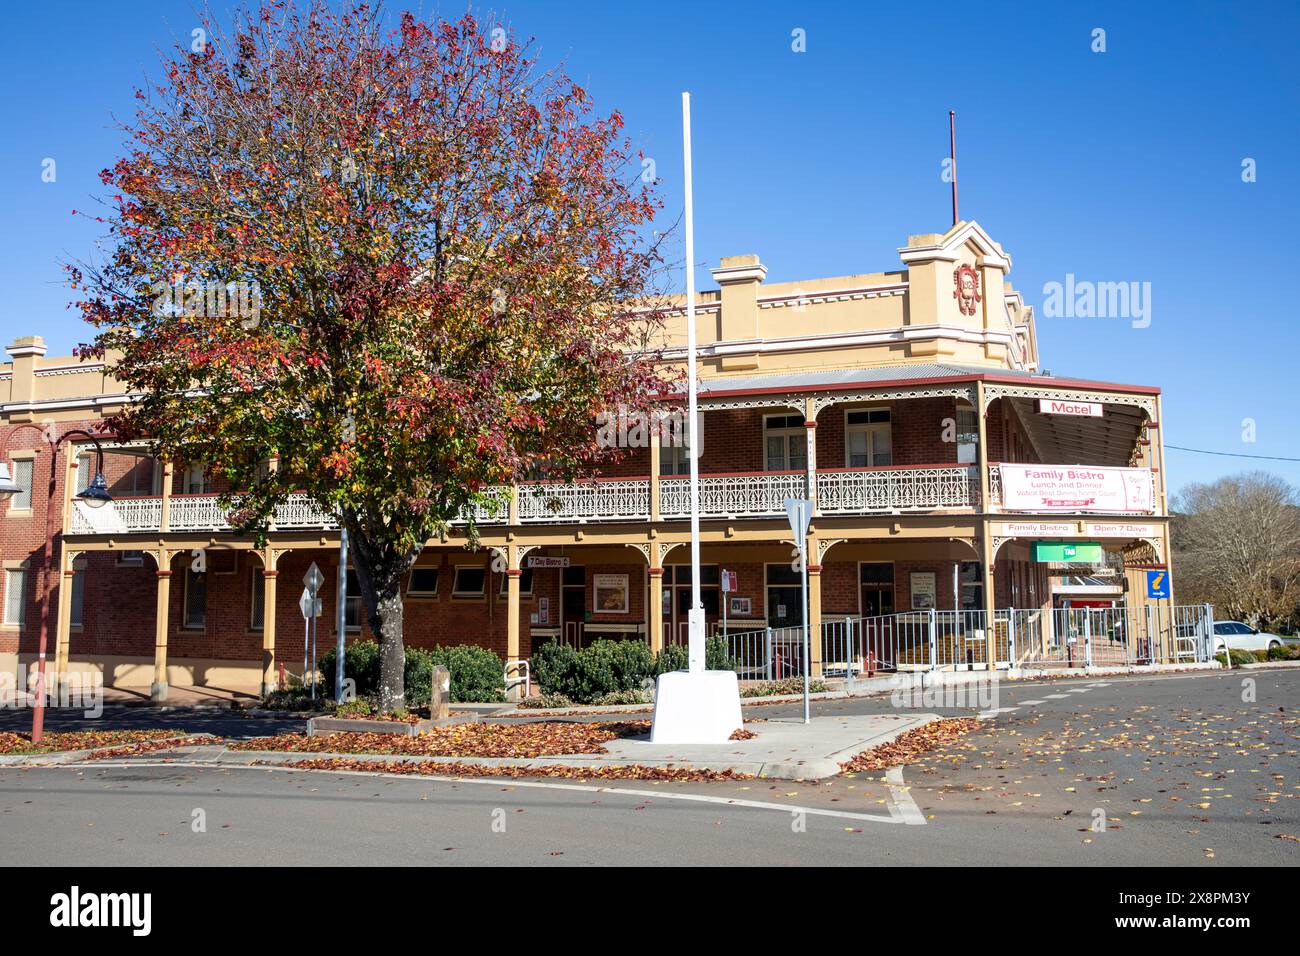 Das Heritage Hotel Dorrigo, Motelzimmer und Gastronomiebetrieb, Architektur und Kulturerbe der 1920er Jahre, Dorrigo Stadtzentrum, NSW, Australien Stockfoto